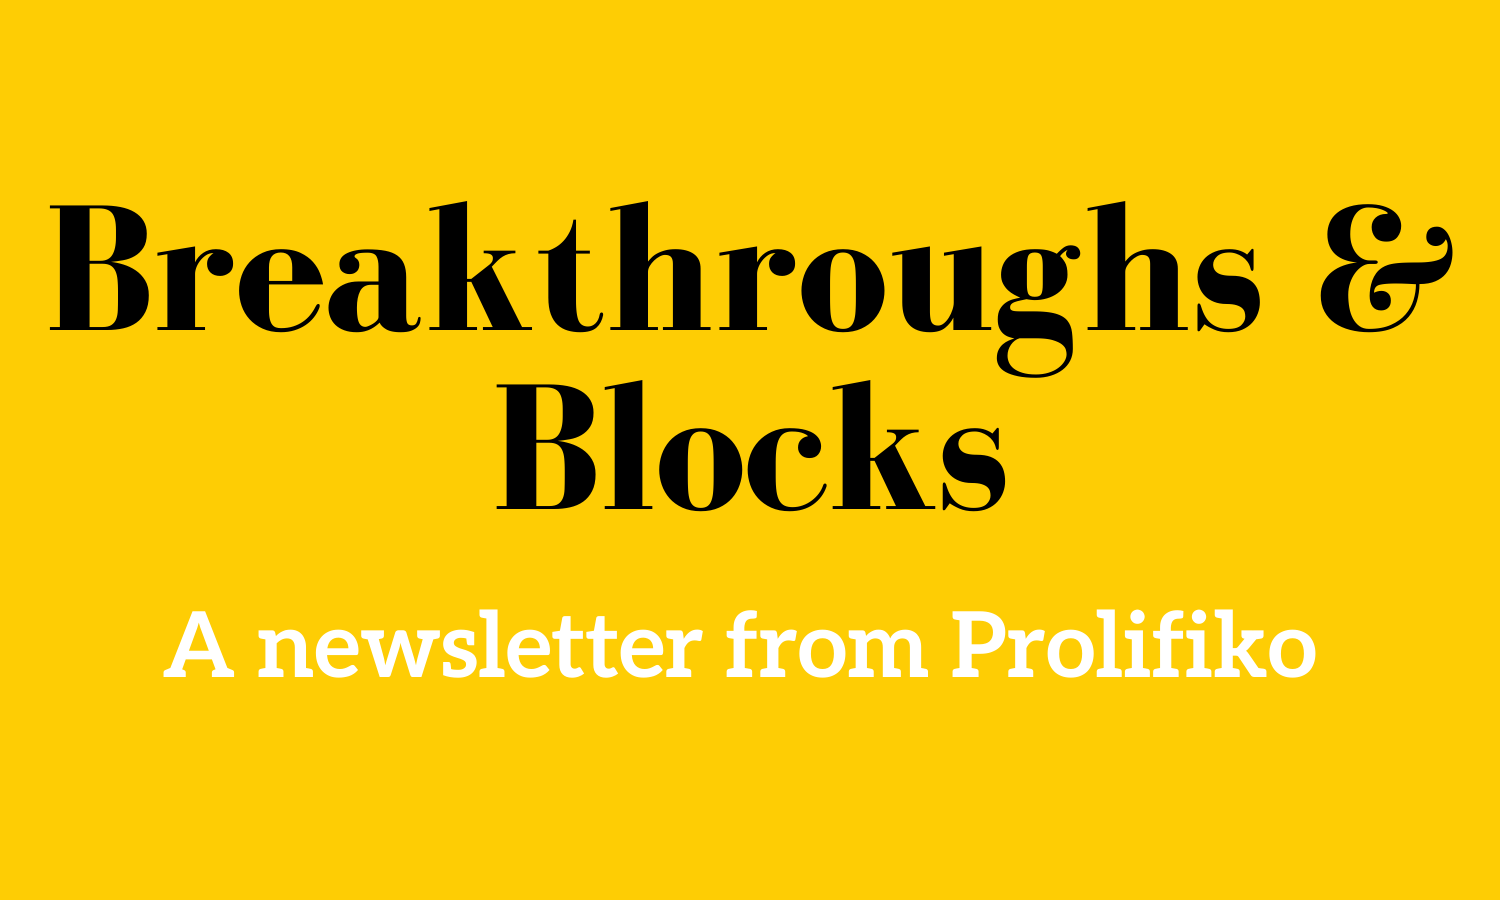 Breakthroughs & blocks logo